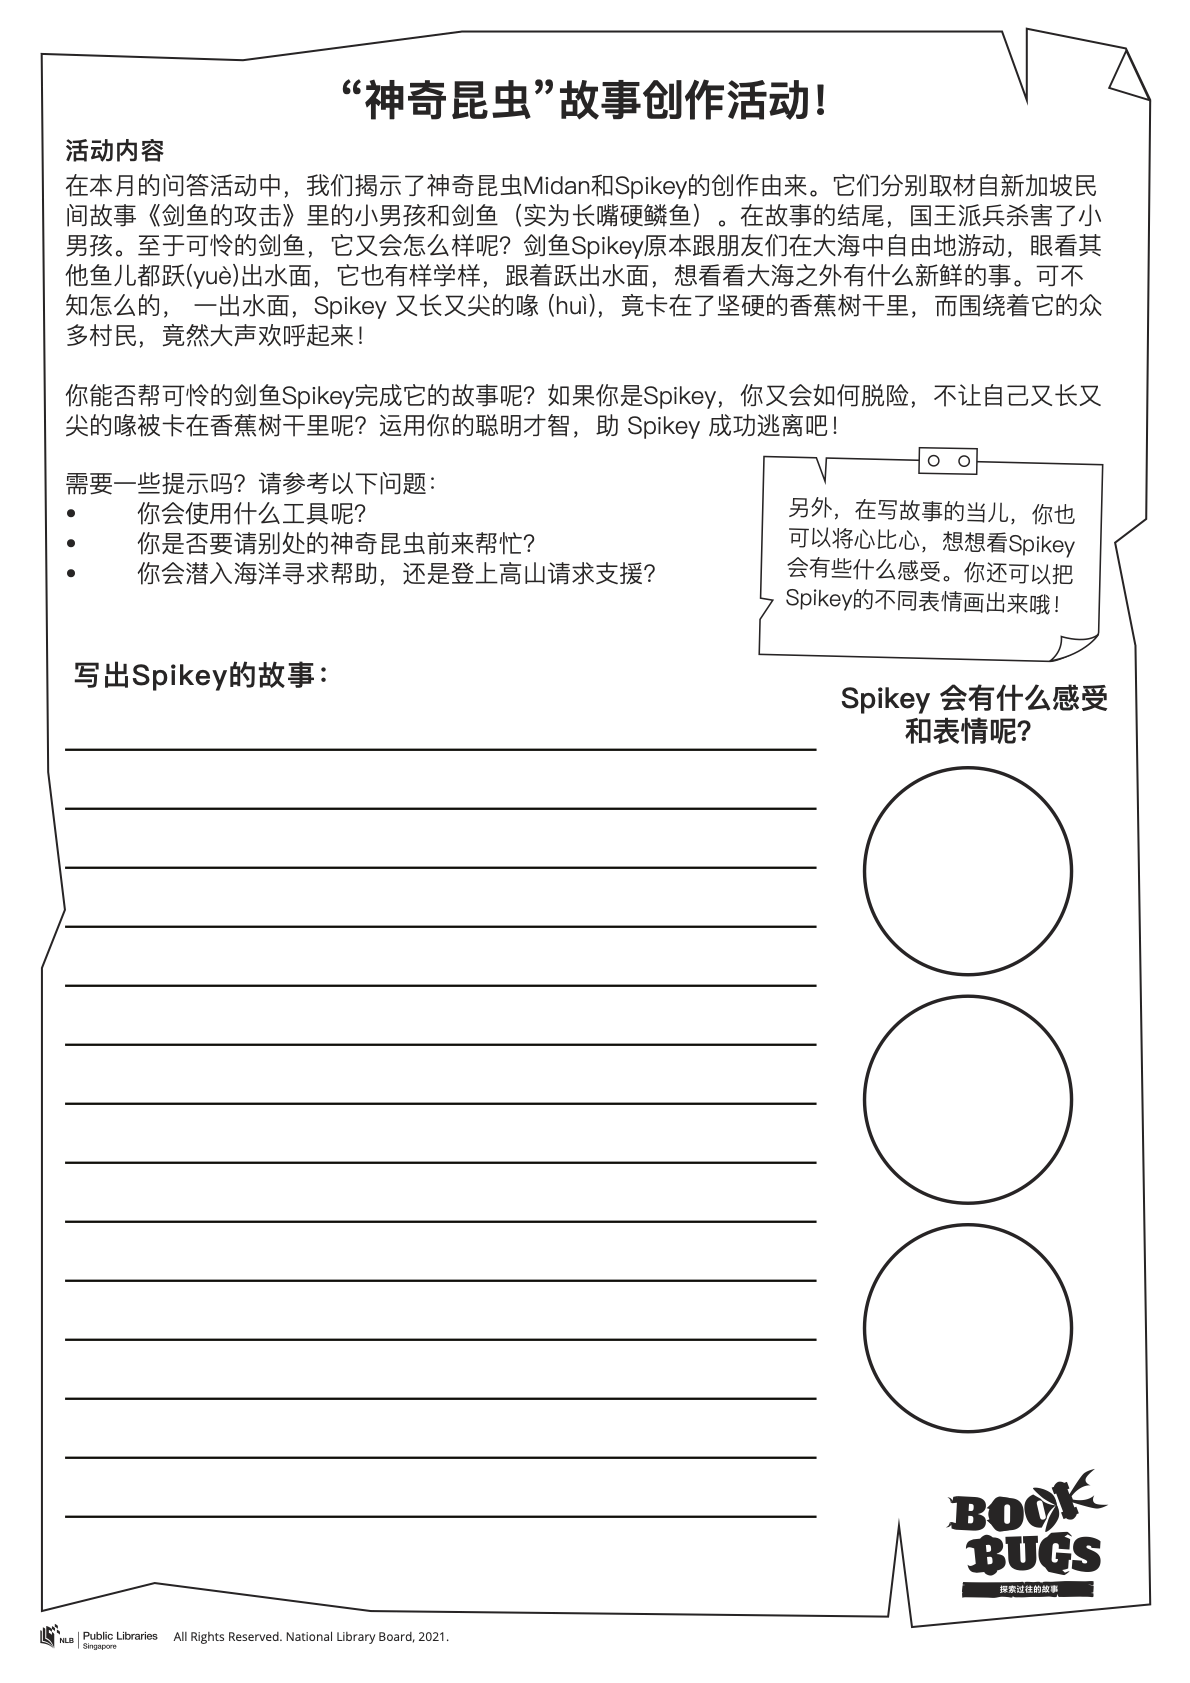 Chinese-English Worksheet